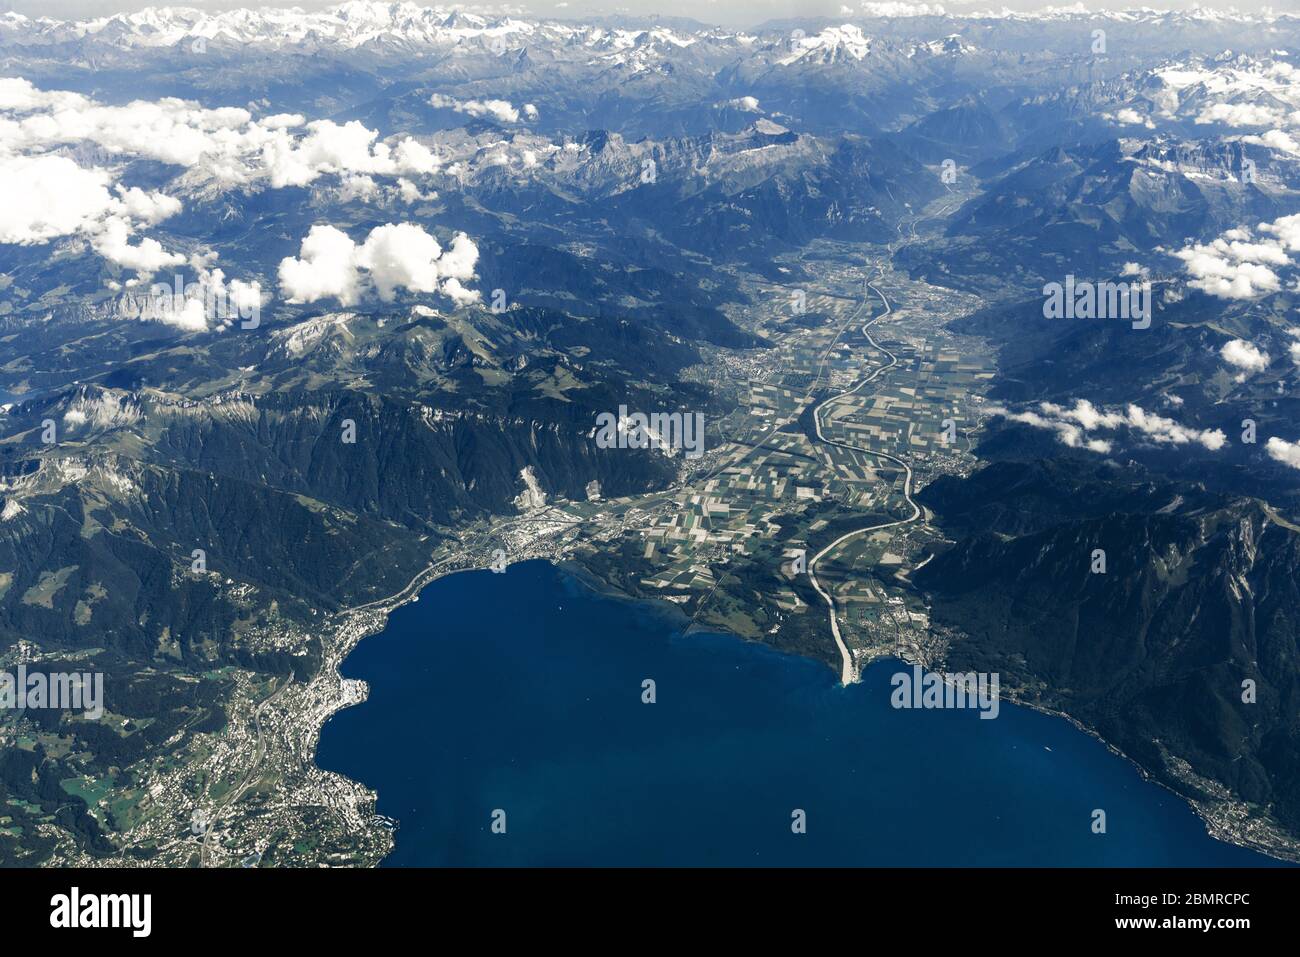 Landscape aerial view of Zurich, Switzerland, lake Zurich, hills and fields. Stock Photo